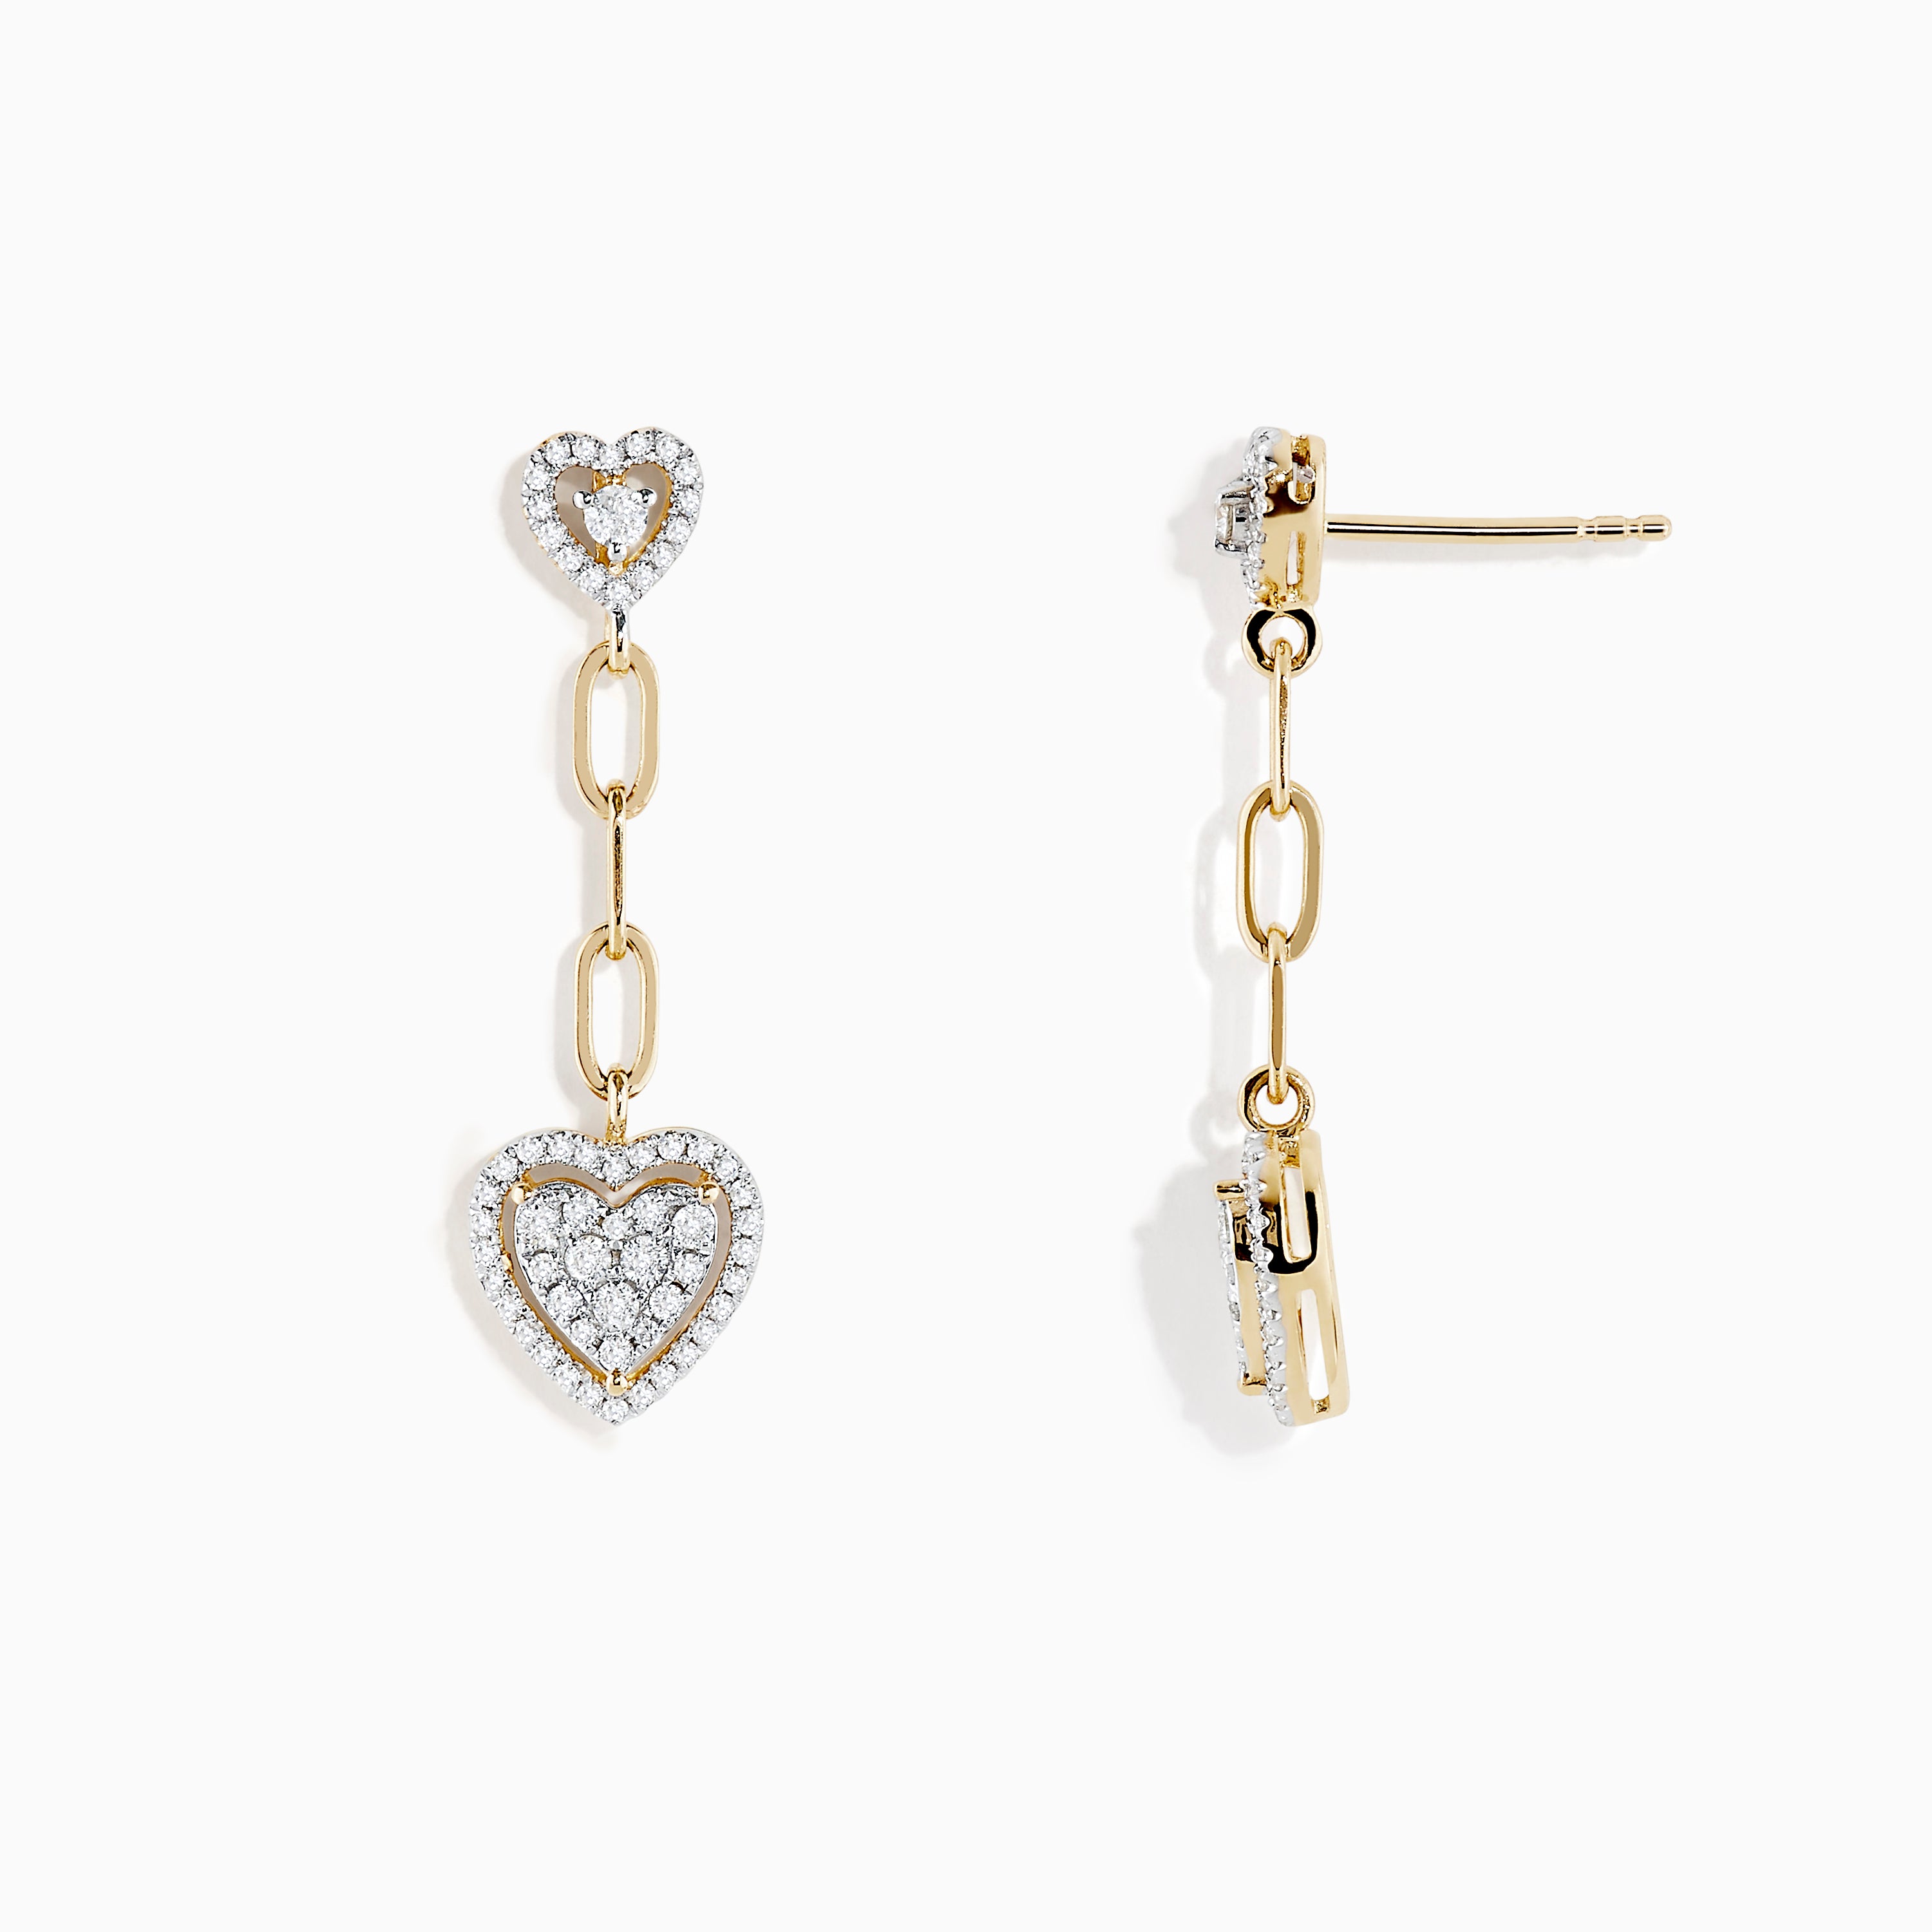 Effy D'oro 14K Yellow Gold Diamond Heart Drop Earrings